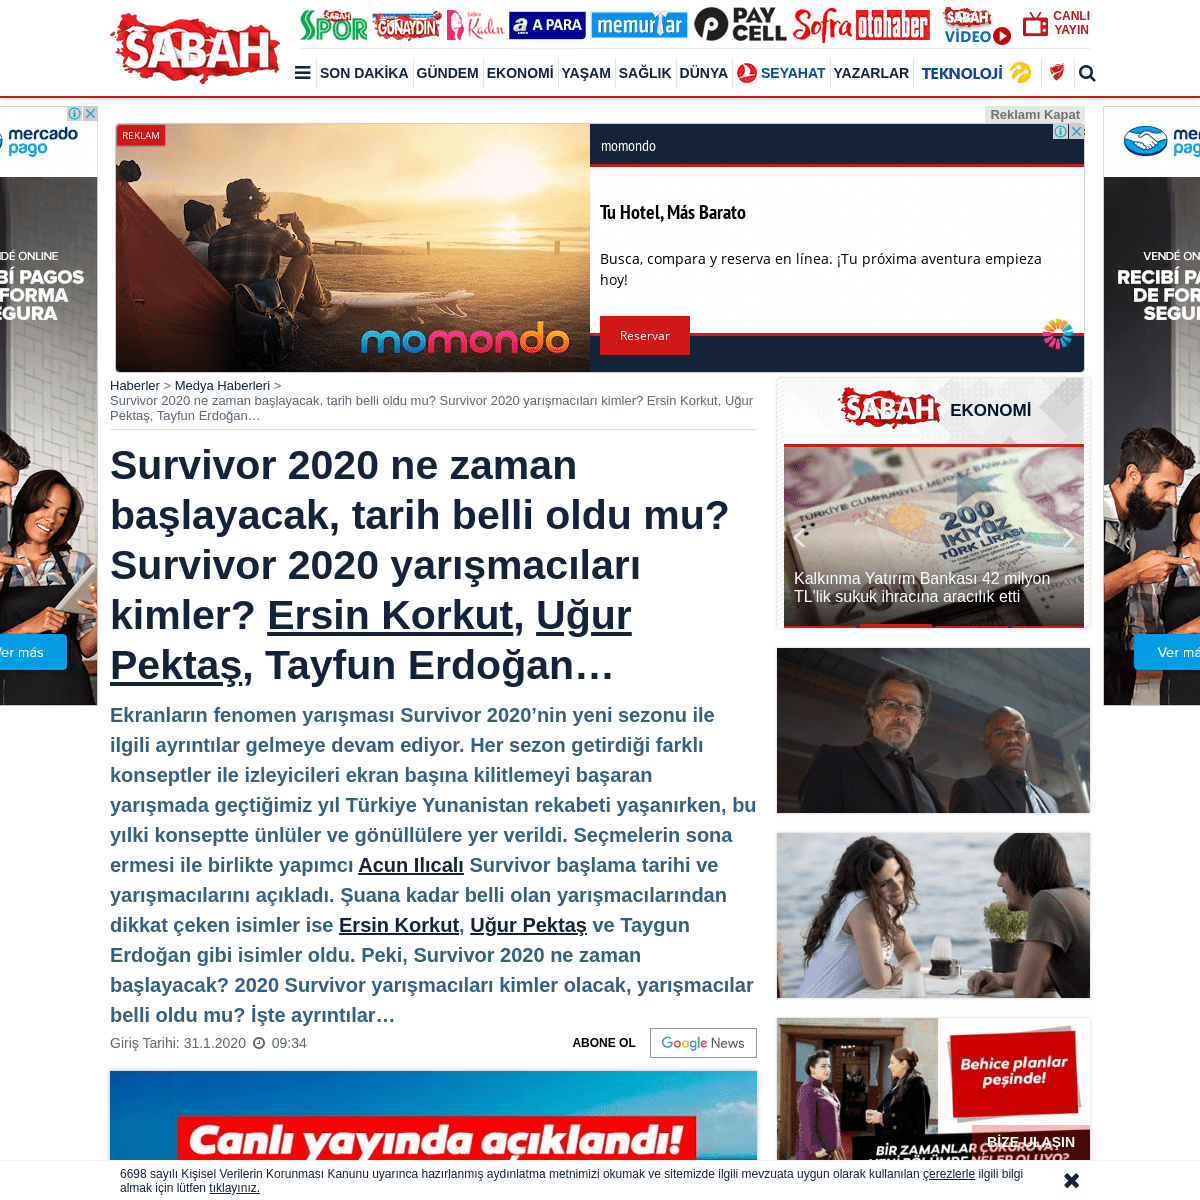 A complete backup of www.sabah.com.tr/medya/2020/01/31/survivor-2020-ne-zaman-baslayacak-tarih-belli-oldu-mu-survivor-2020-yaris